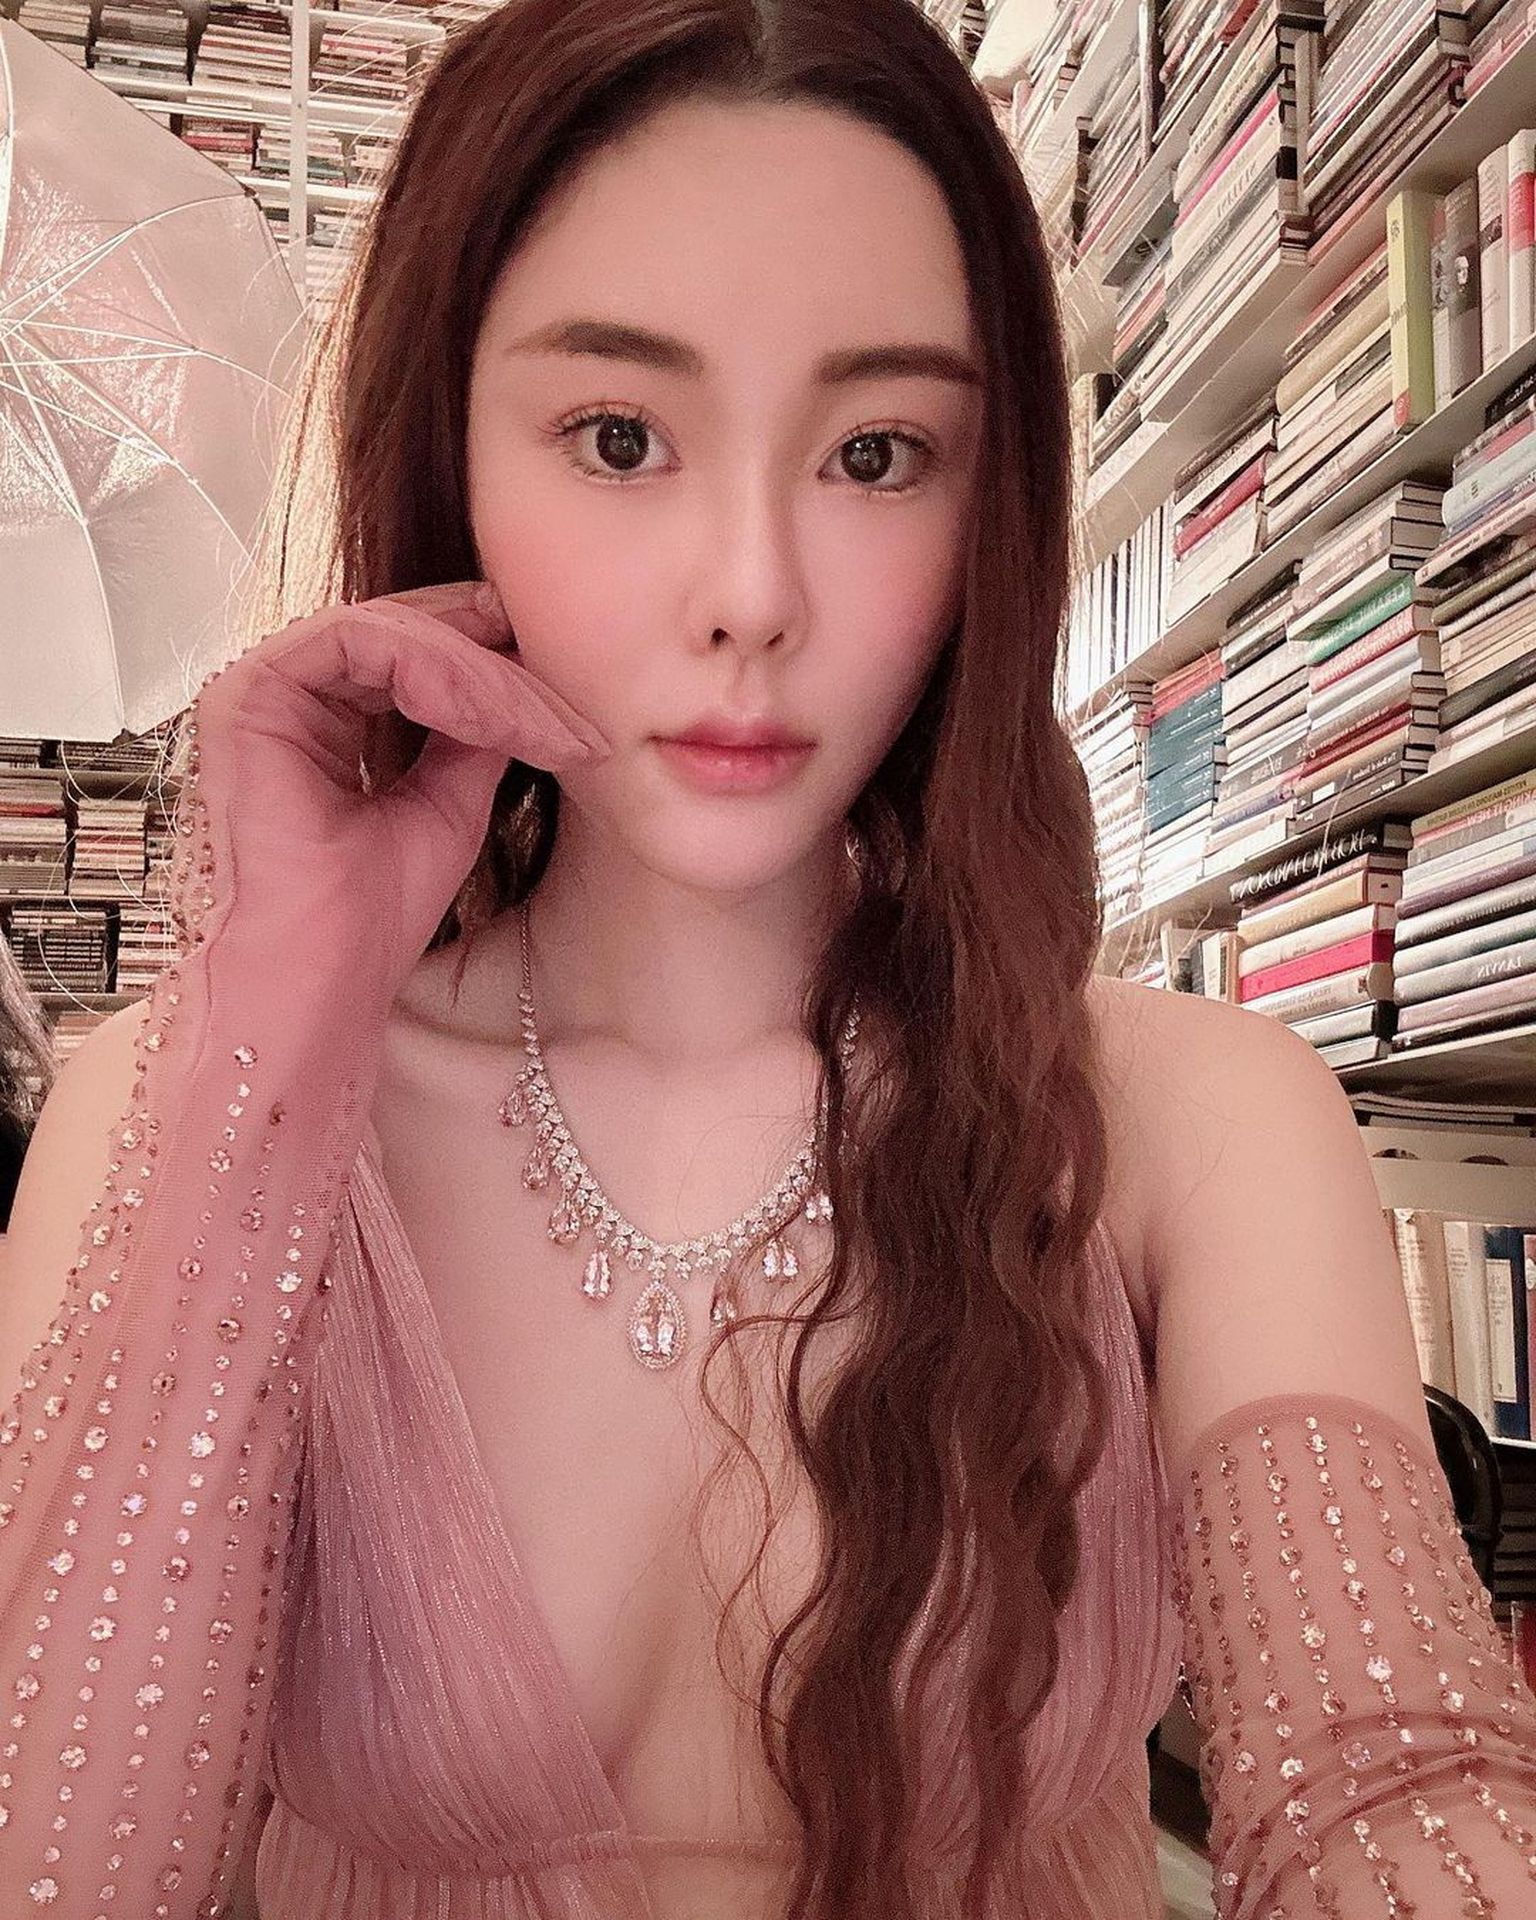 28-aastane Hongkongi modell ja sotsiaalmeedia mõjutaja Abby Choi mõrvati. Politsei teatel on naine tükeldatud ja ta kehaosad on leitud erinevatest kohtadest